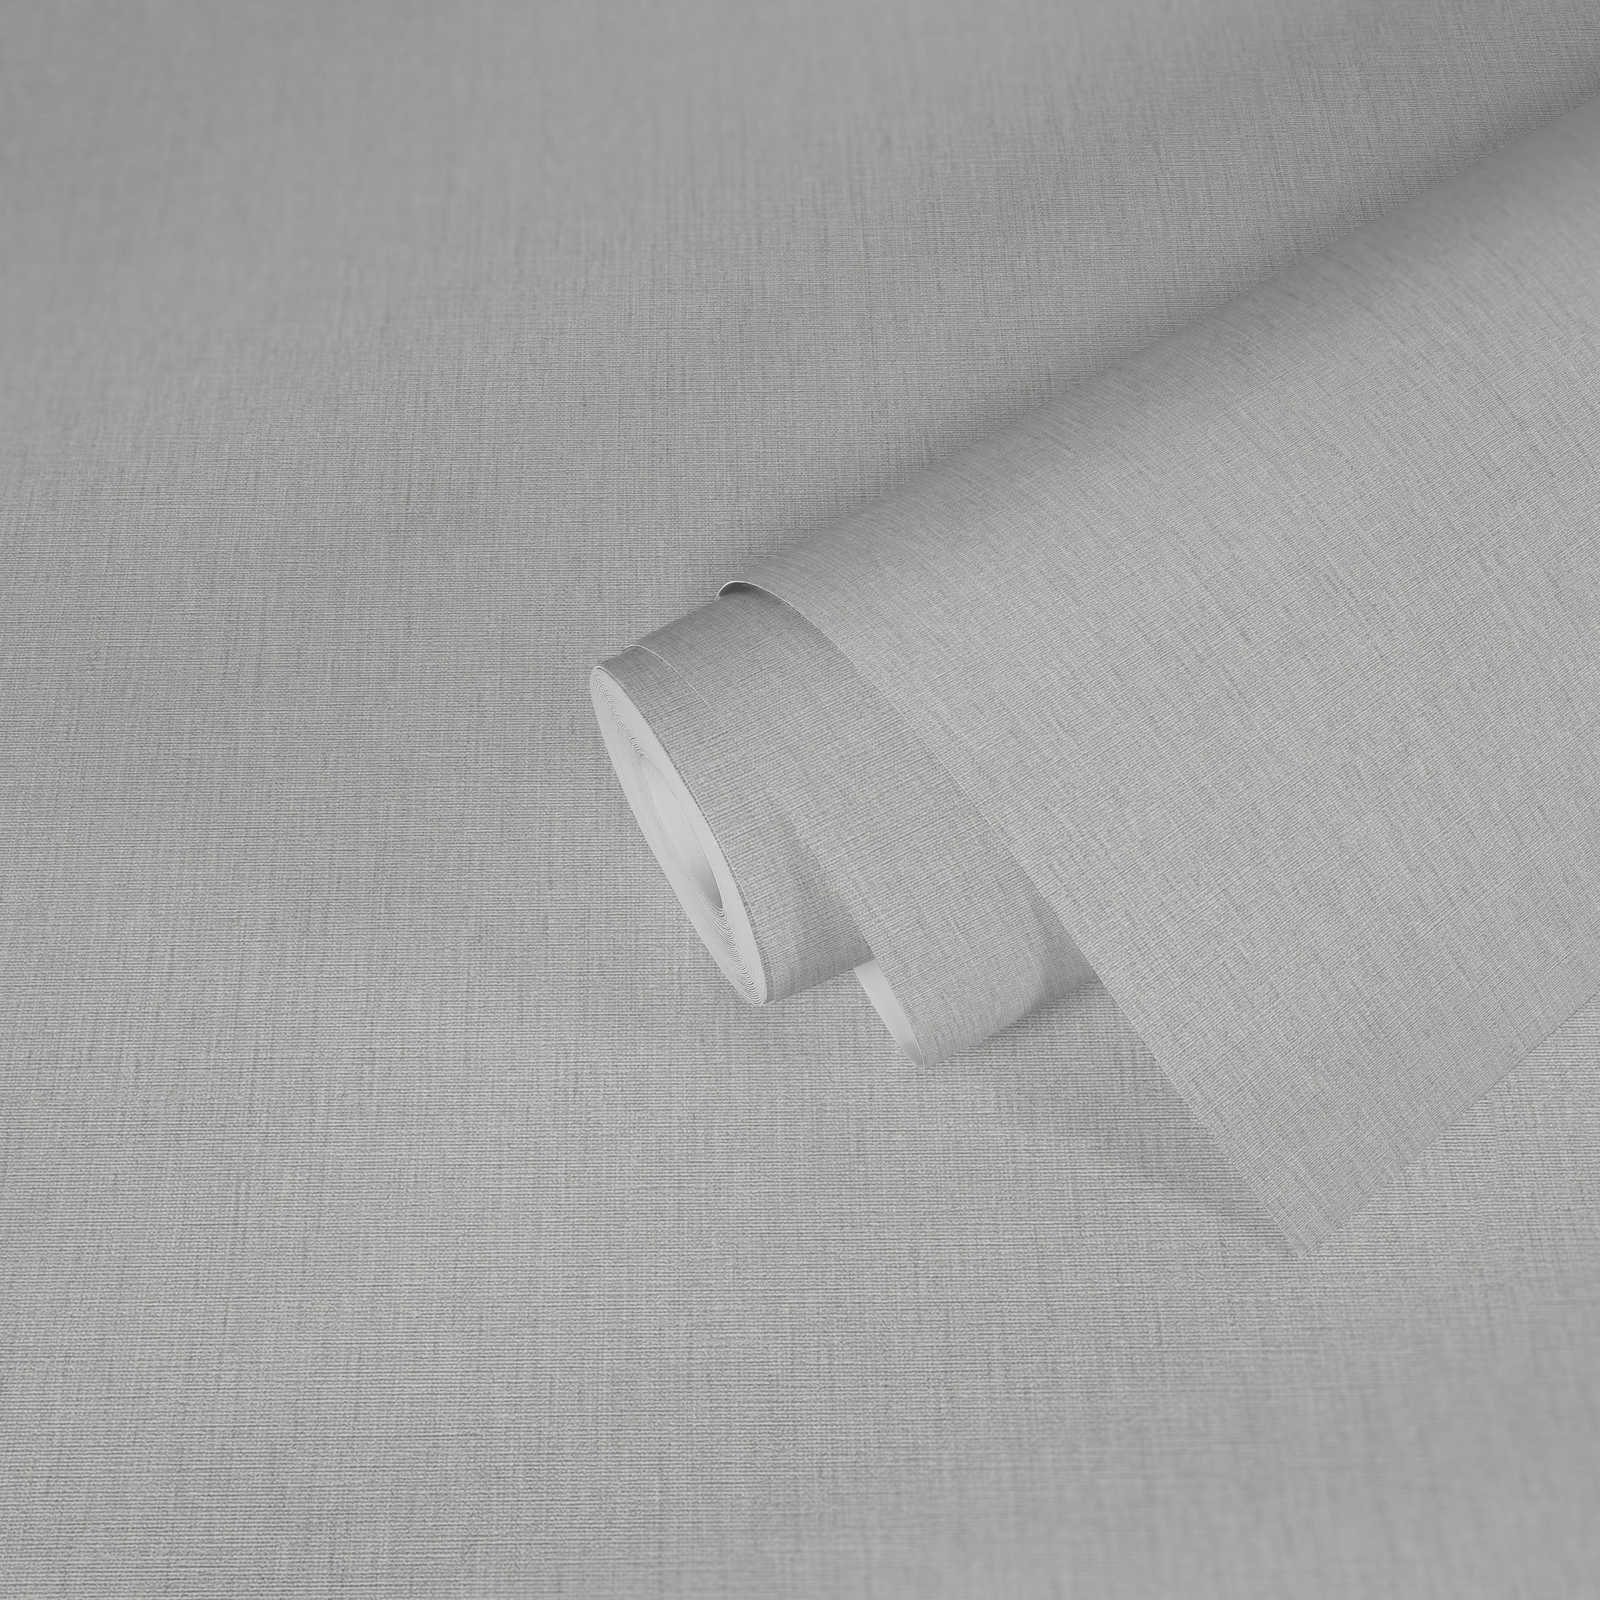             papier peint en papier uni avec aspect textile et structure en aspect mat - gris, gris clair
        